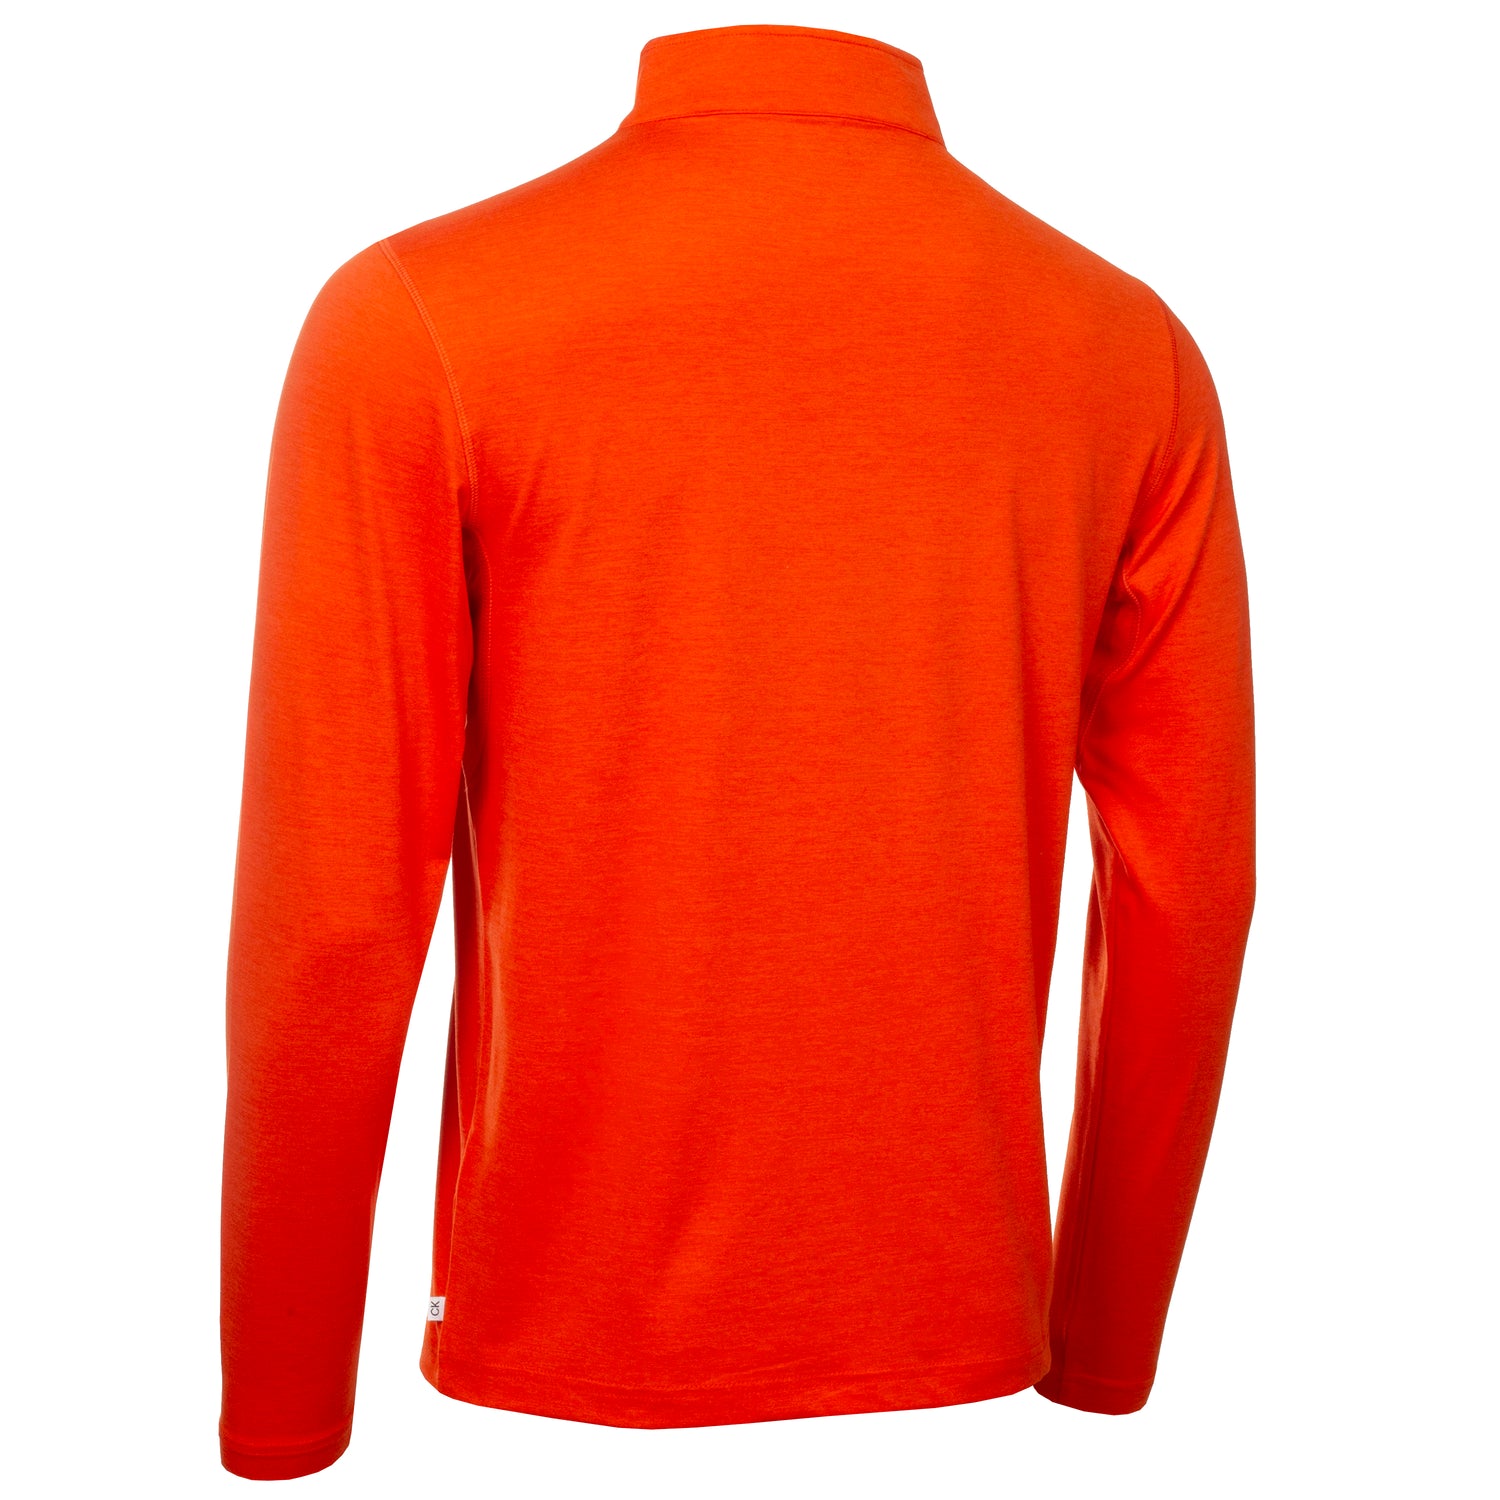 Calvin Klein Golf Newport 1/2 Zip Pullover Top C9924 - Orange   